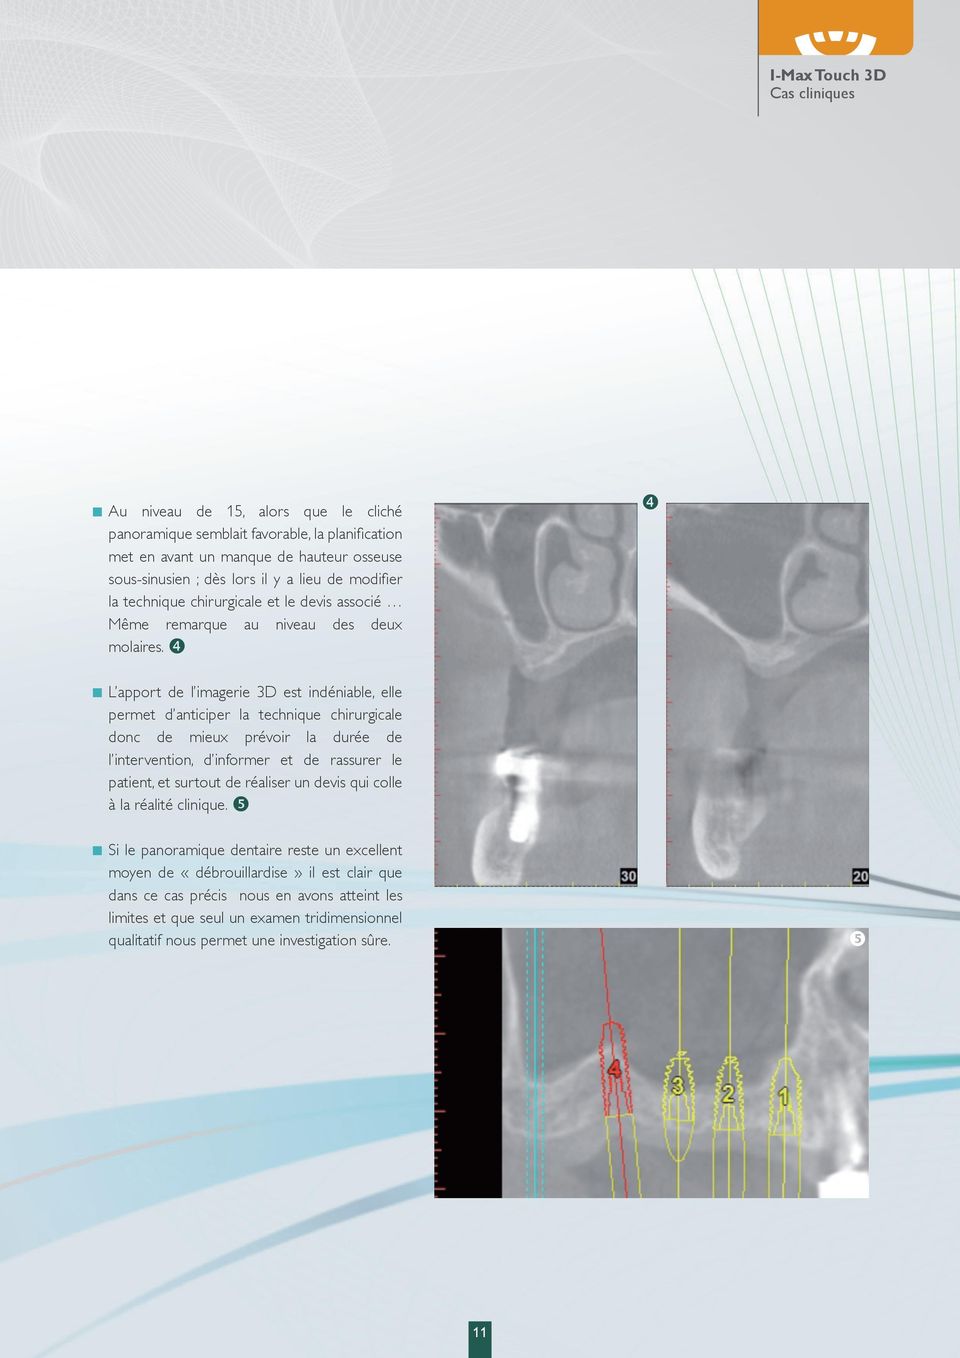 L apport de l imagerie 3D est indéniable, elle permet d anticiper la technique chirurgicale donc de mieux prévoir la durée de l intervention, d informer et de rassurer le patient, et surtout